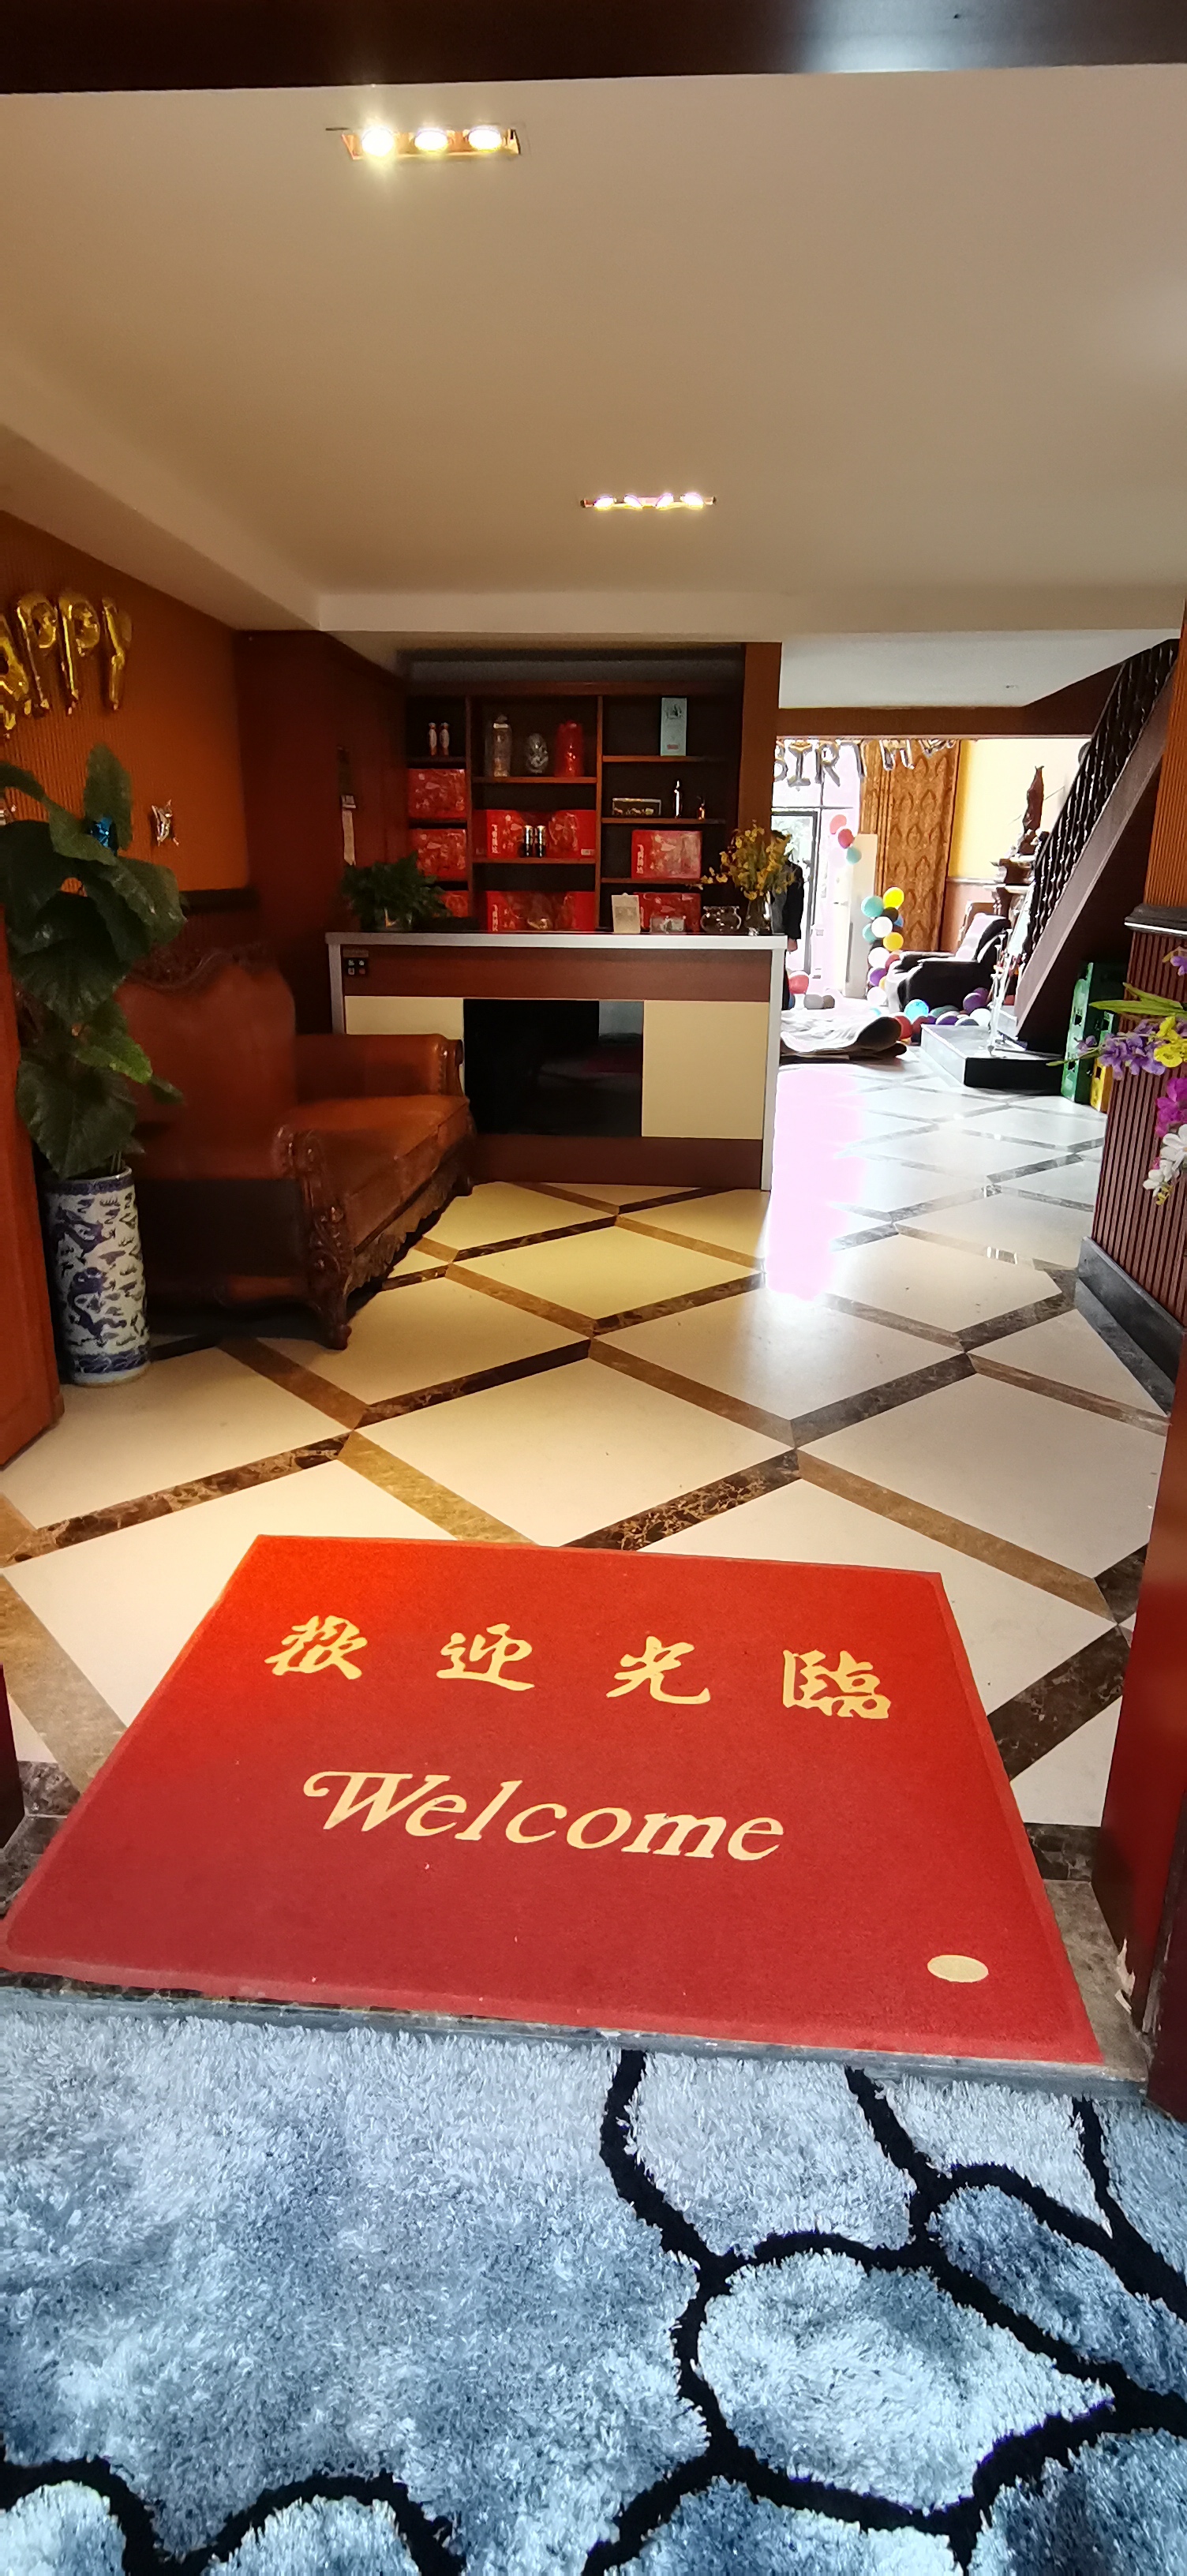 重庆市十米家宴餐饮管理有限公司 环境照片活动图片